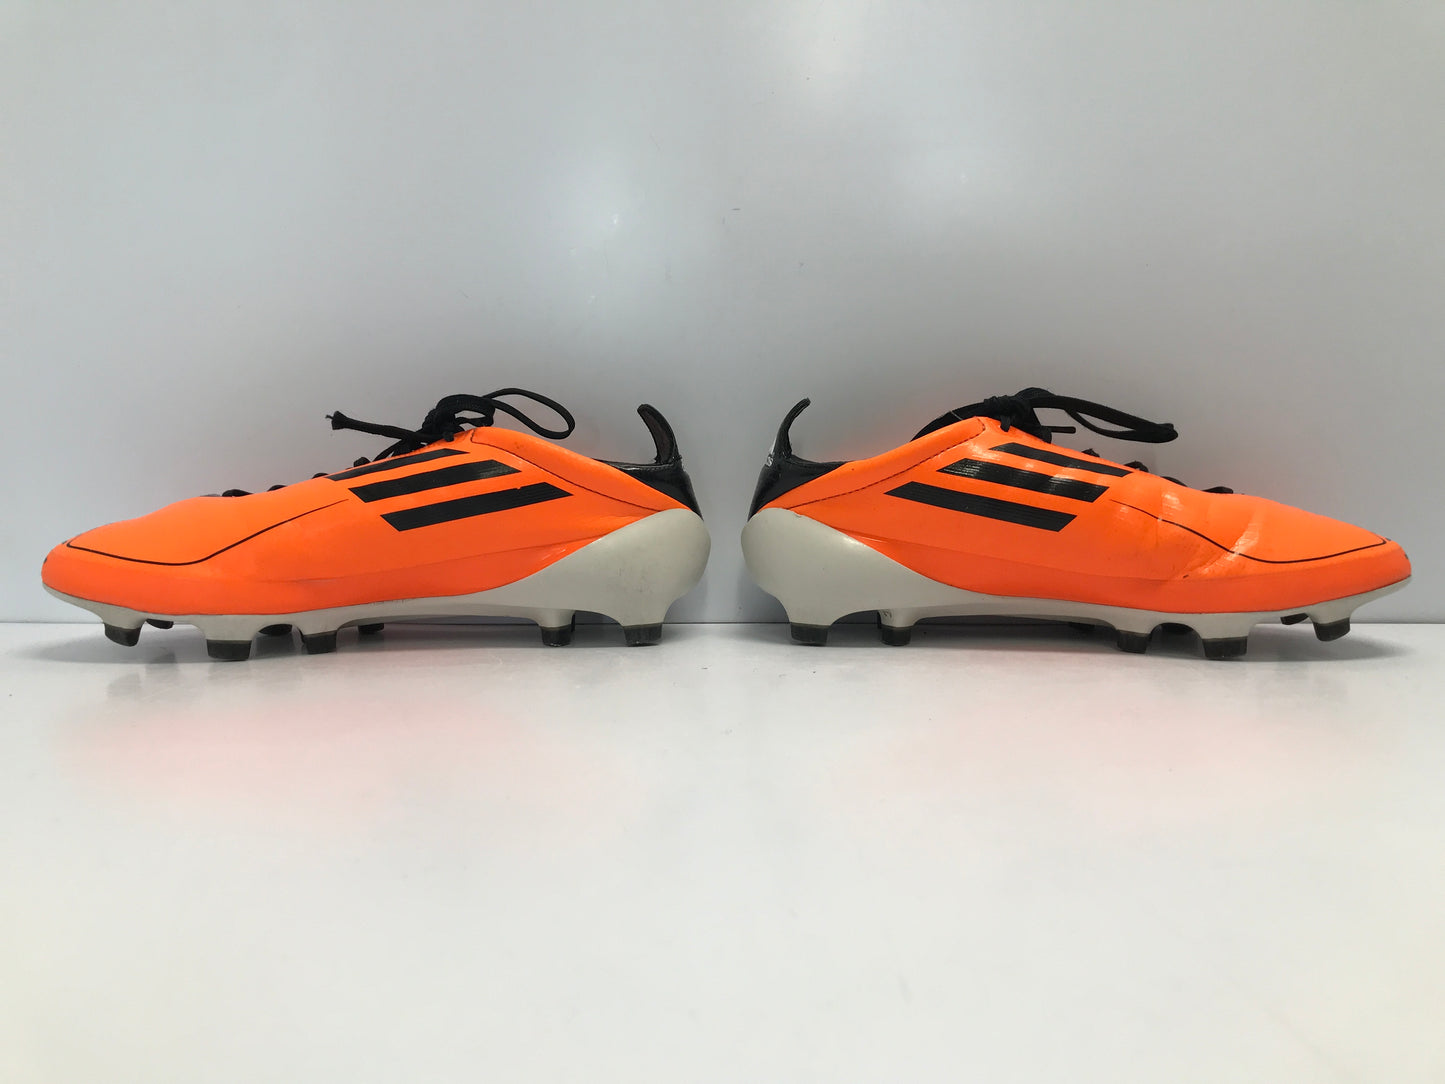 Soccer Shoes Cleats Men's Size 6 Adidas Black Tangerine Excellent